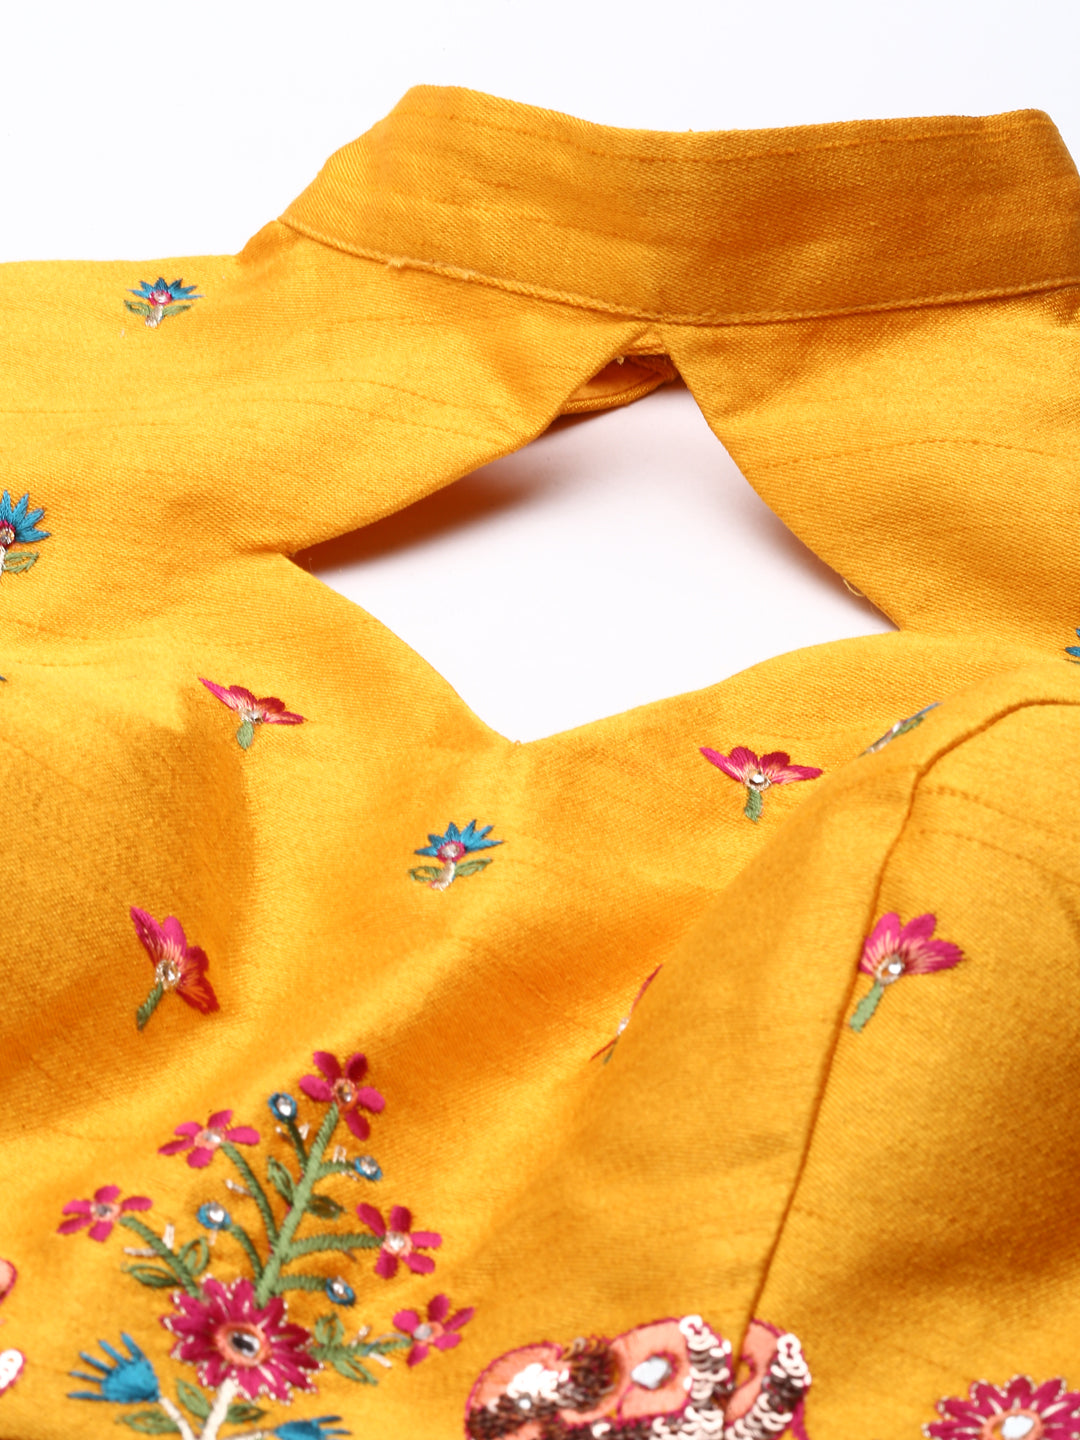 Women's Pure Art Silk Patch Work Fully-Stitched Lehenga & Stitched Blouse, Dupatta - Royal Dwells